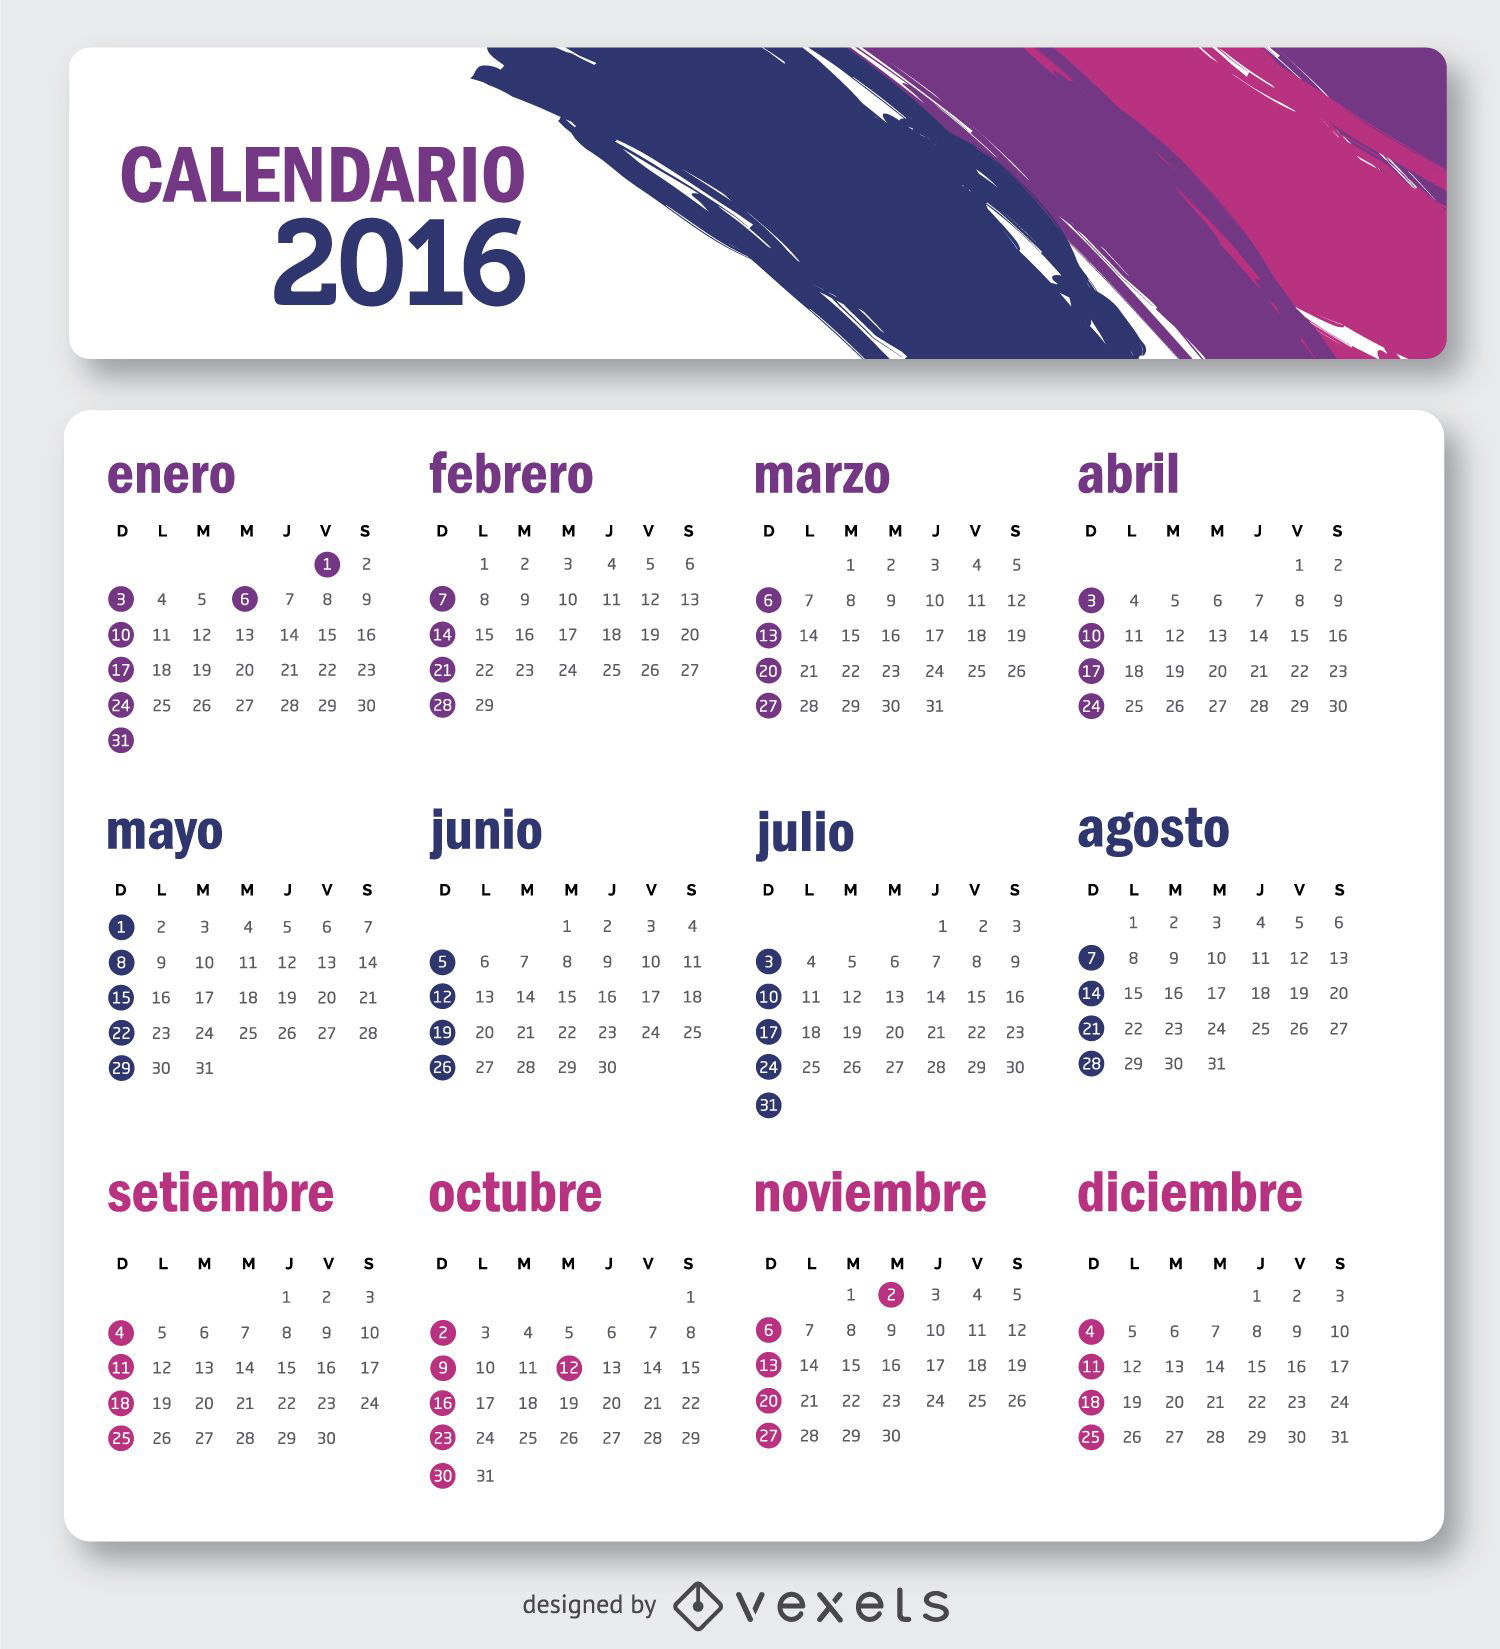 Calendario 2016 simple en español